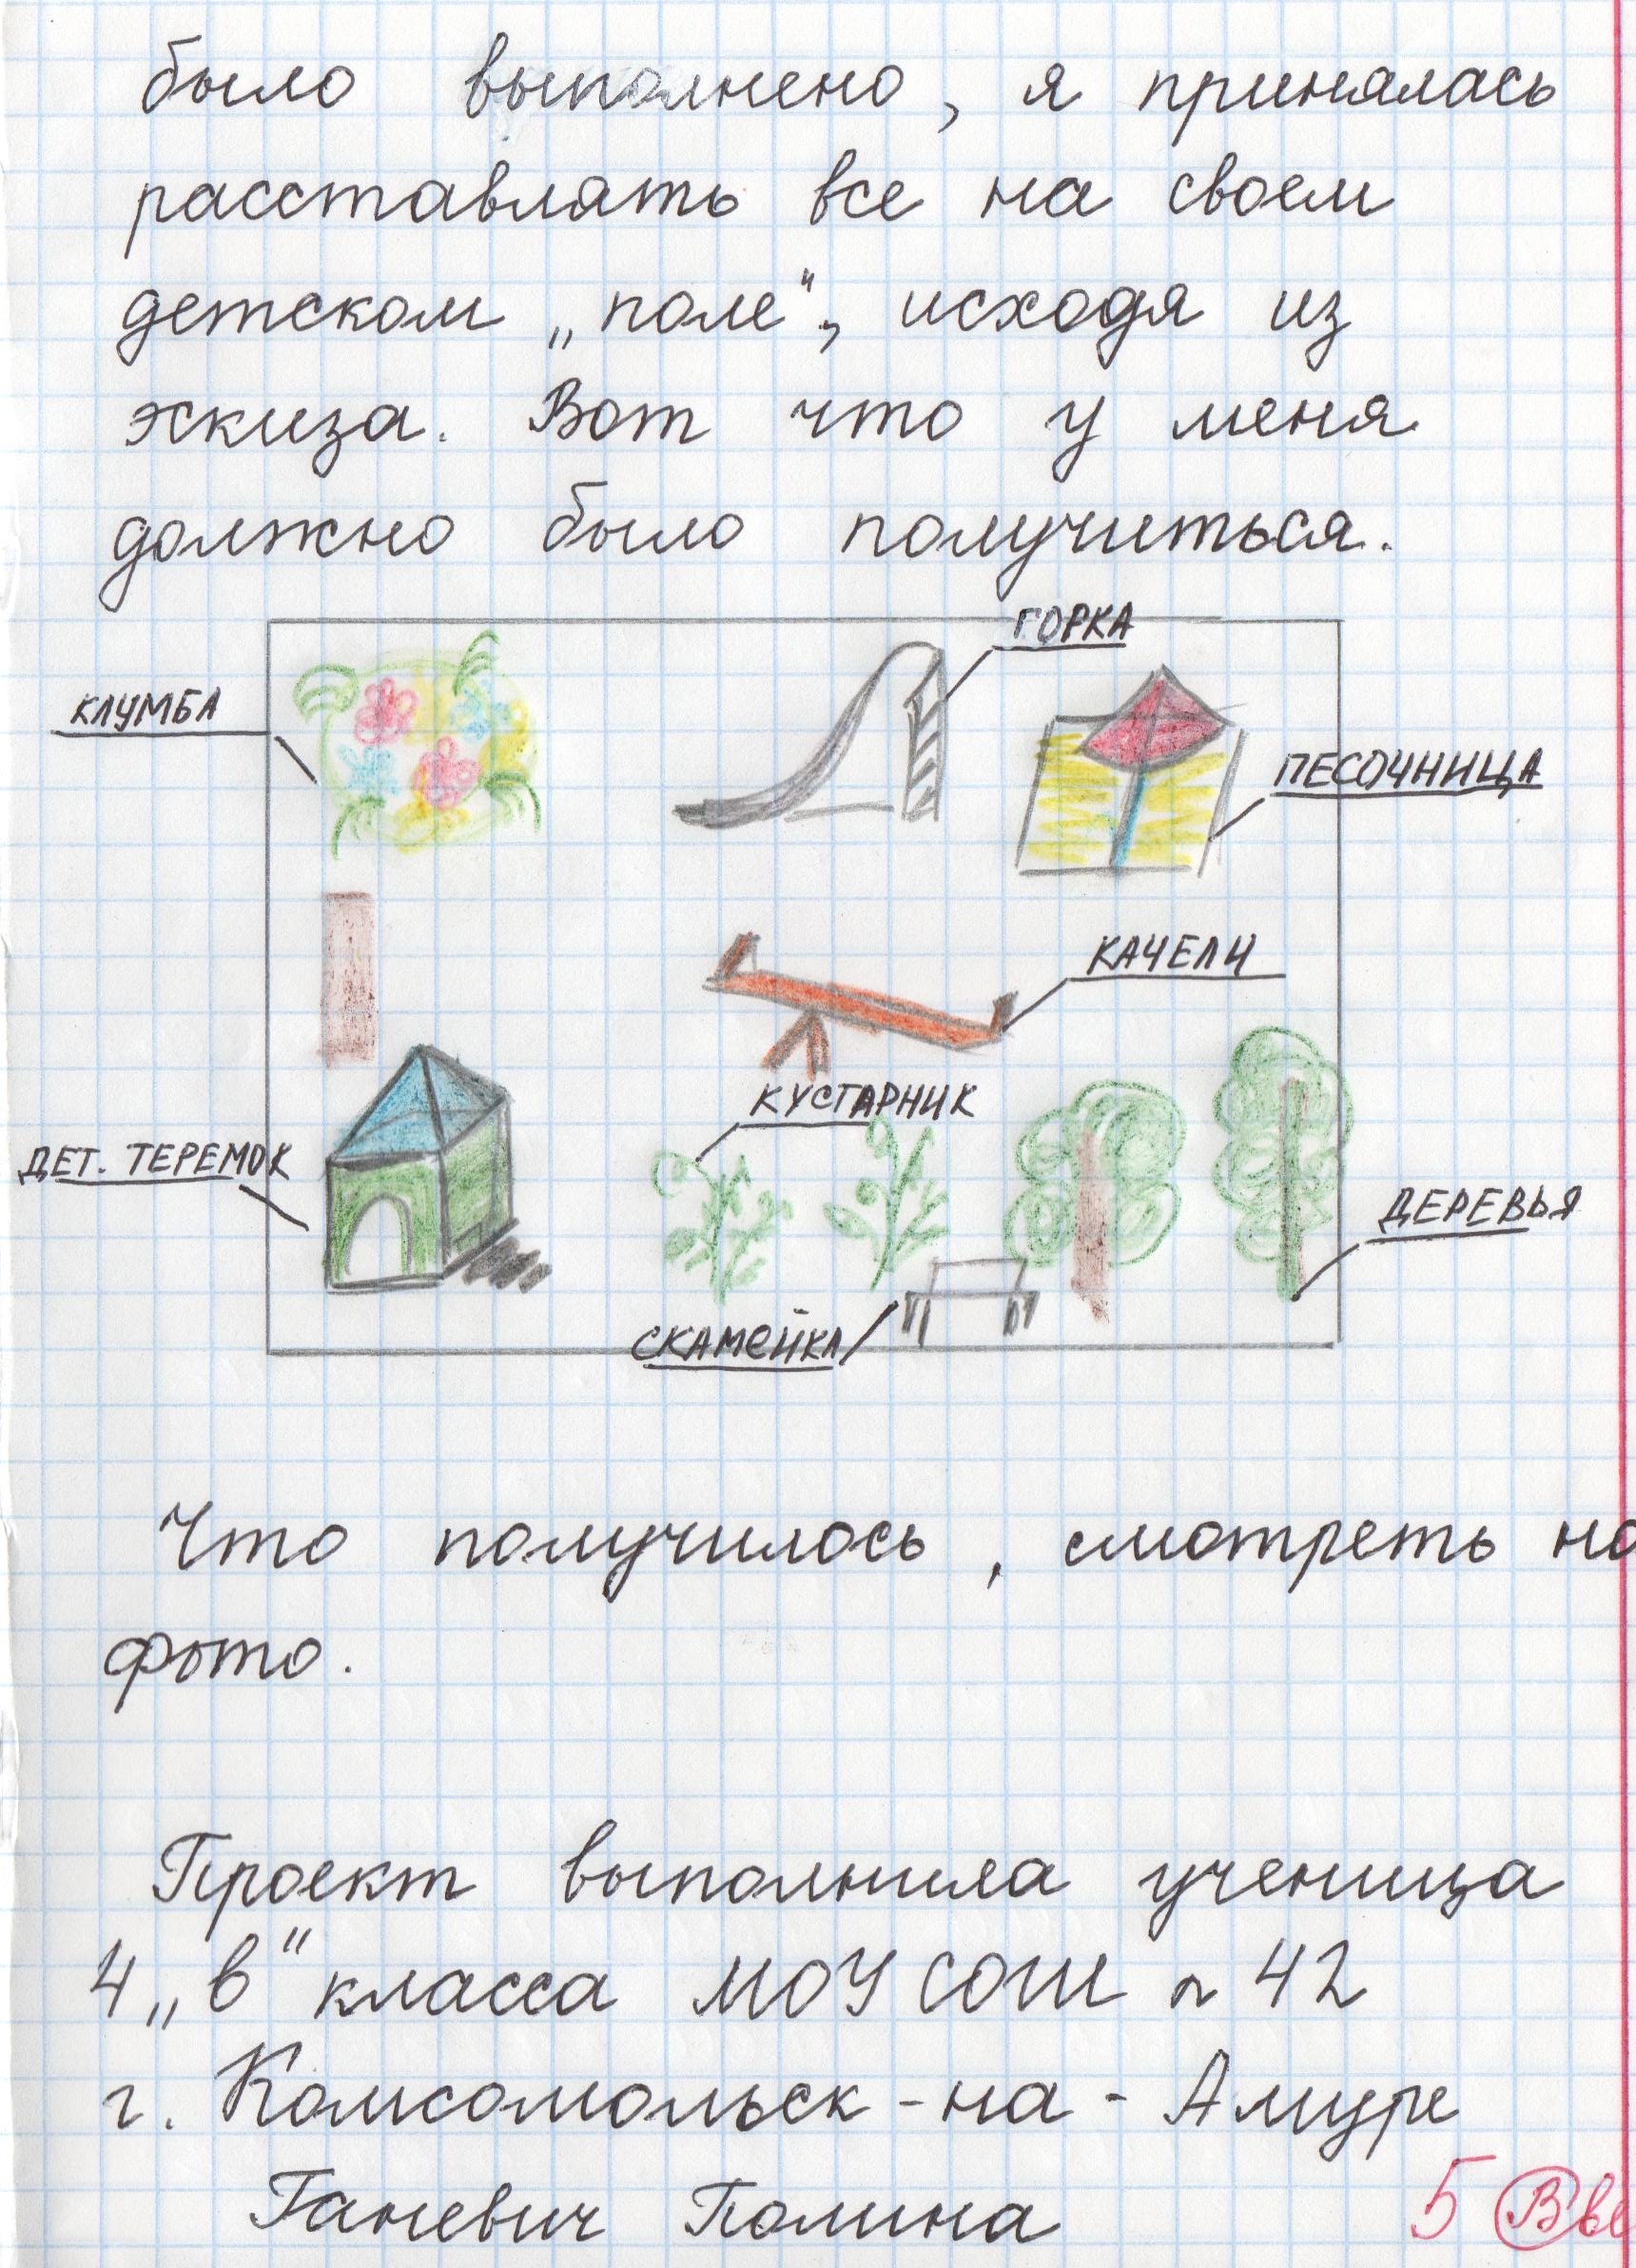 Проект на тему Детская площадка Выполнила ученица 4 класса МОУ СОШ № 42 Ганевич Полина